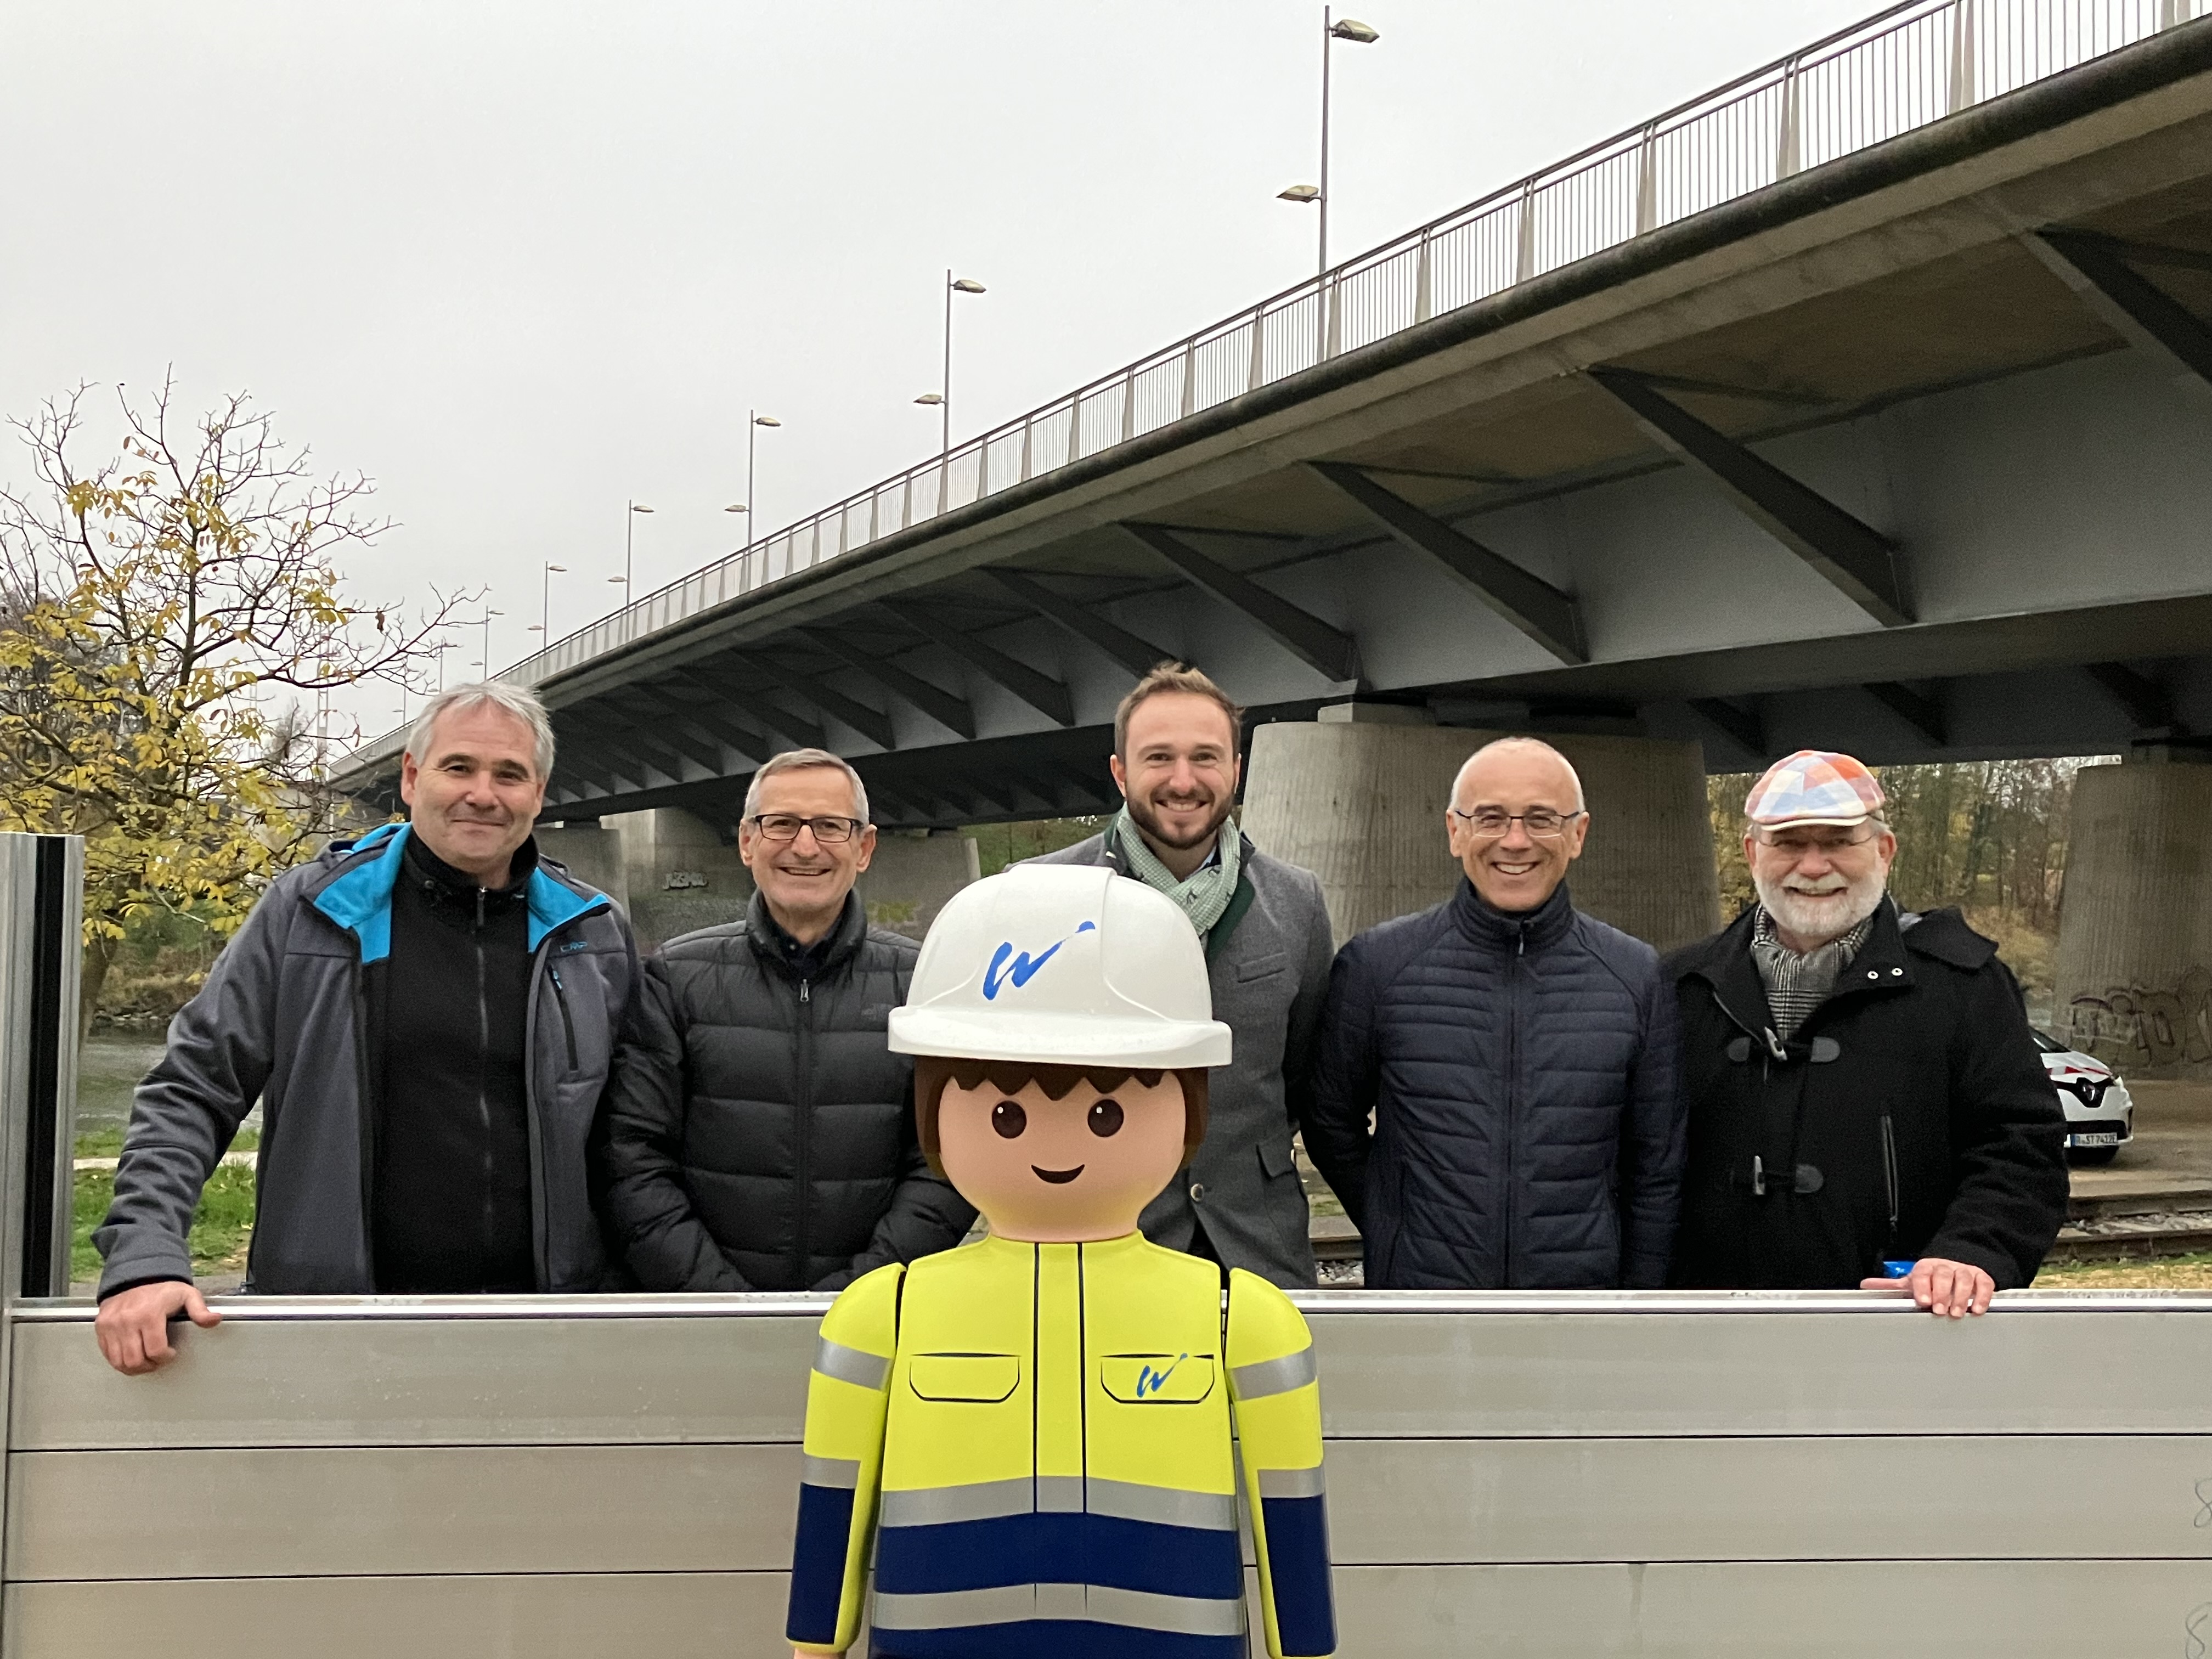 Im Vordergrund das Playmobilmännchen, dahinter die zum Teil aufgebaute mobile Hochwasserschutzwand mit fünf Mitarbeitern der Stadt Regensburg. Im Hintergrund diagonal im Bild die Nibelungenbrücke.